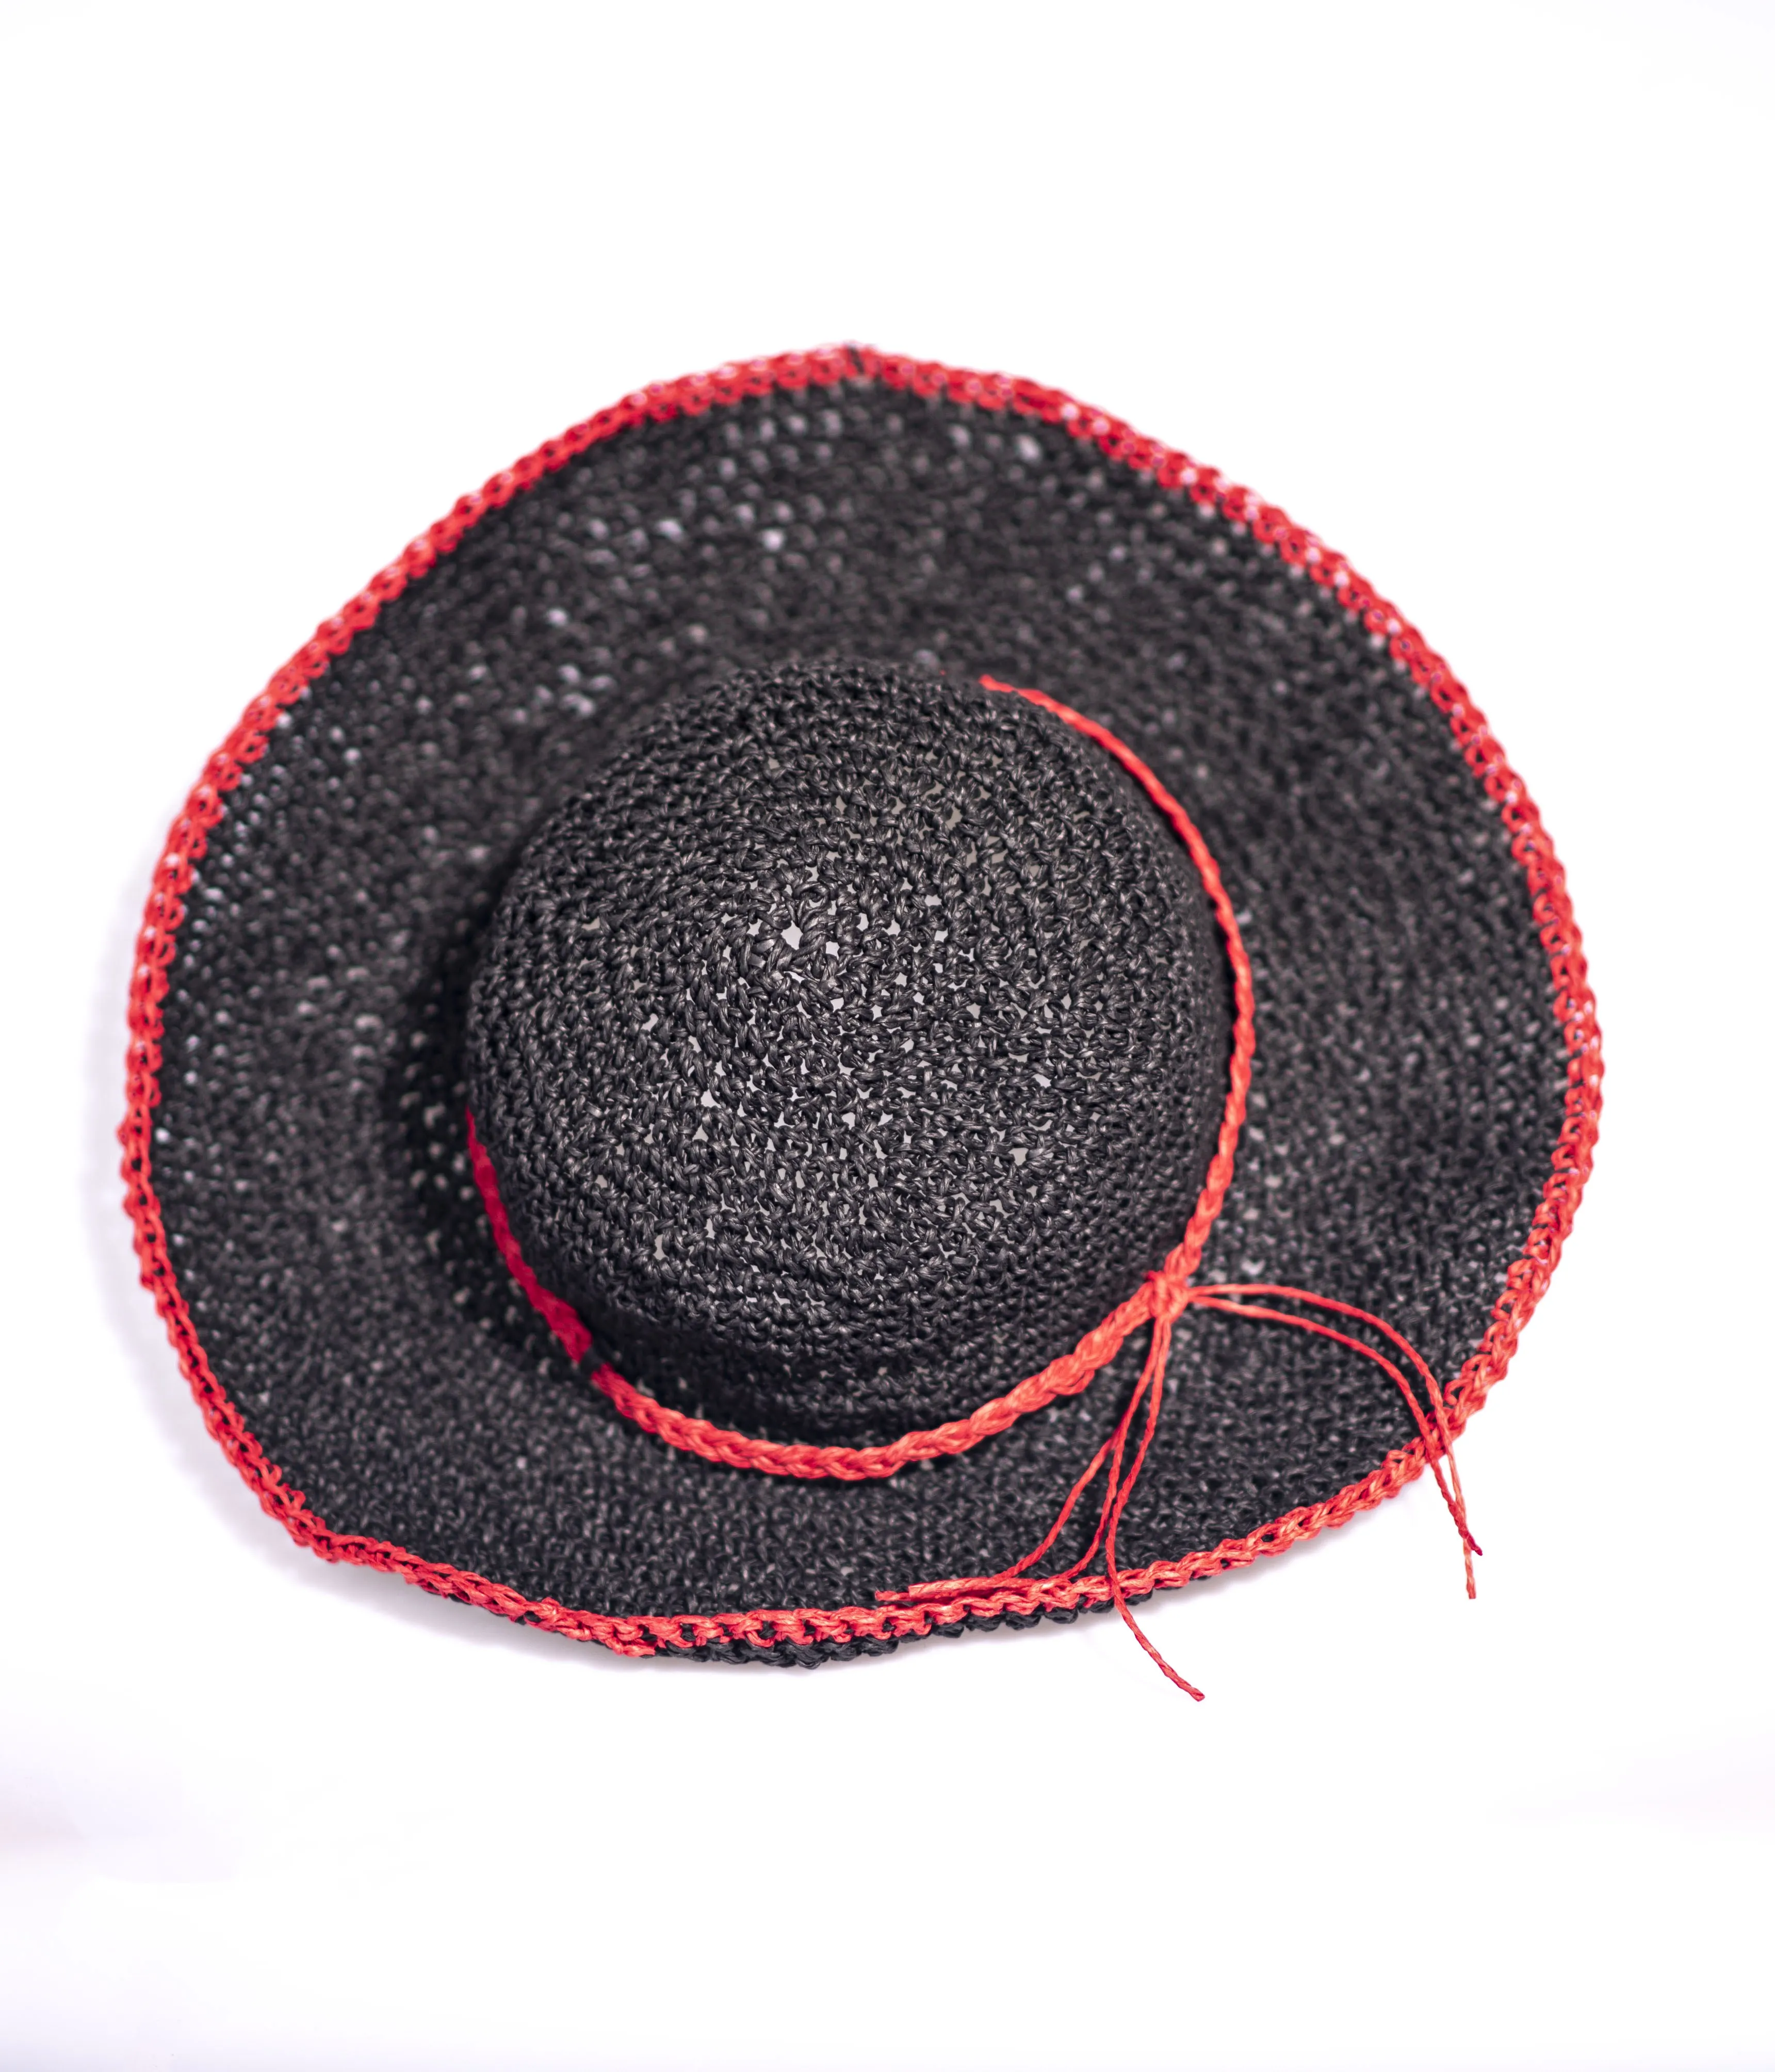 Соломы Для женщин шляпа пляжная шляпа от солнца Кепки женская летняя шляпа с широкими полями шляпа защита Для женщин Шапки 2021 Стиль от AliExpress RU&CIS NEW